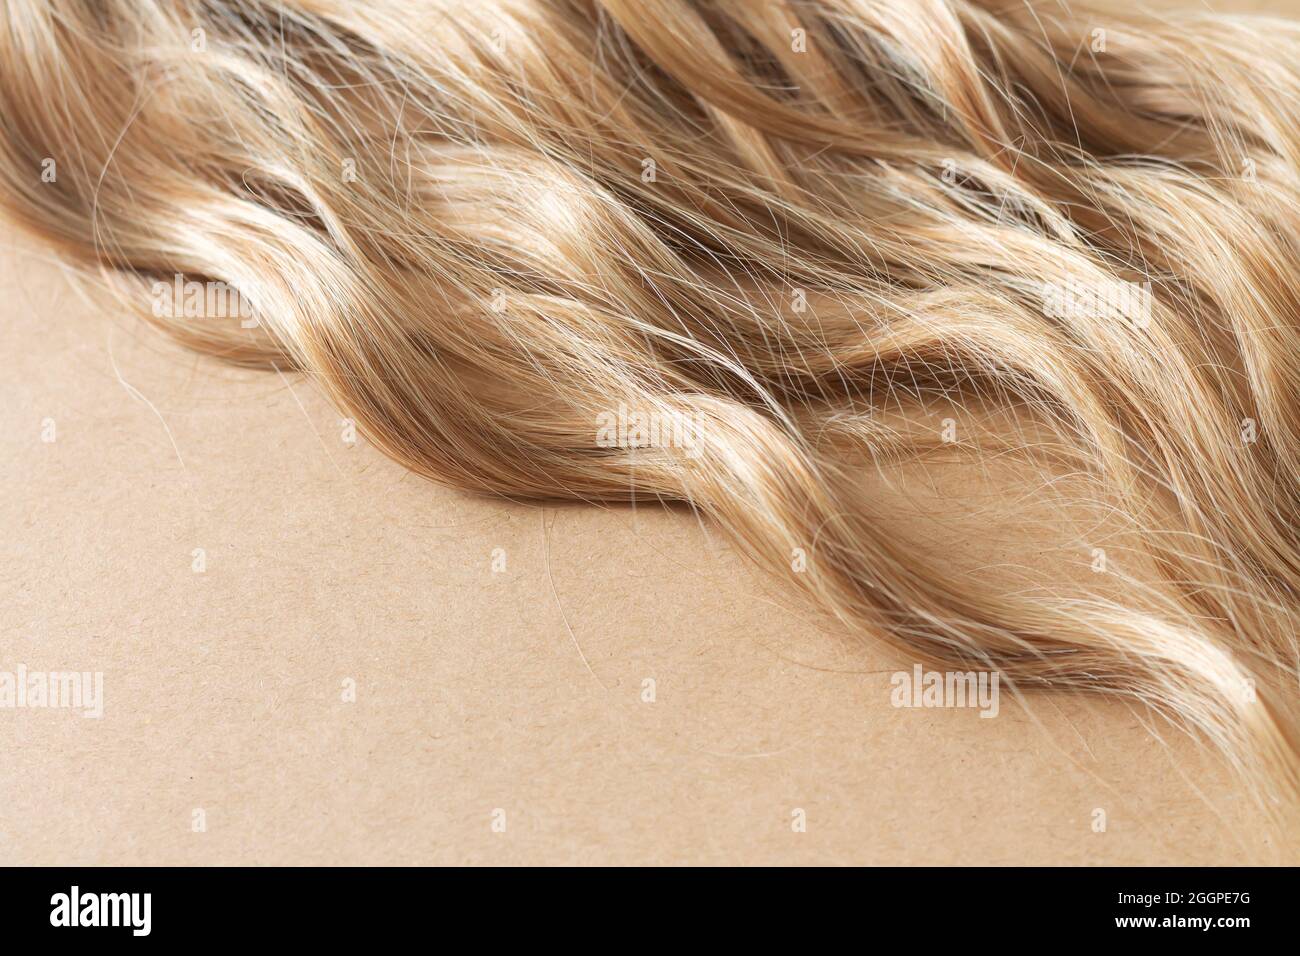 Textur von natürlichen langen blonden welligen Haaren. Haarschnitt,  Styling, Pflege oder Erweiterung Konzept. Speicherplatz kopieren  Stockfotografie - Alamy